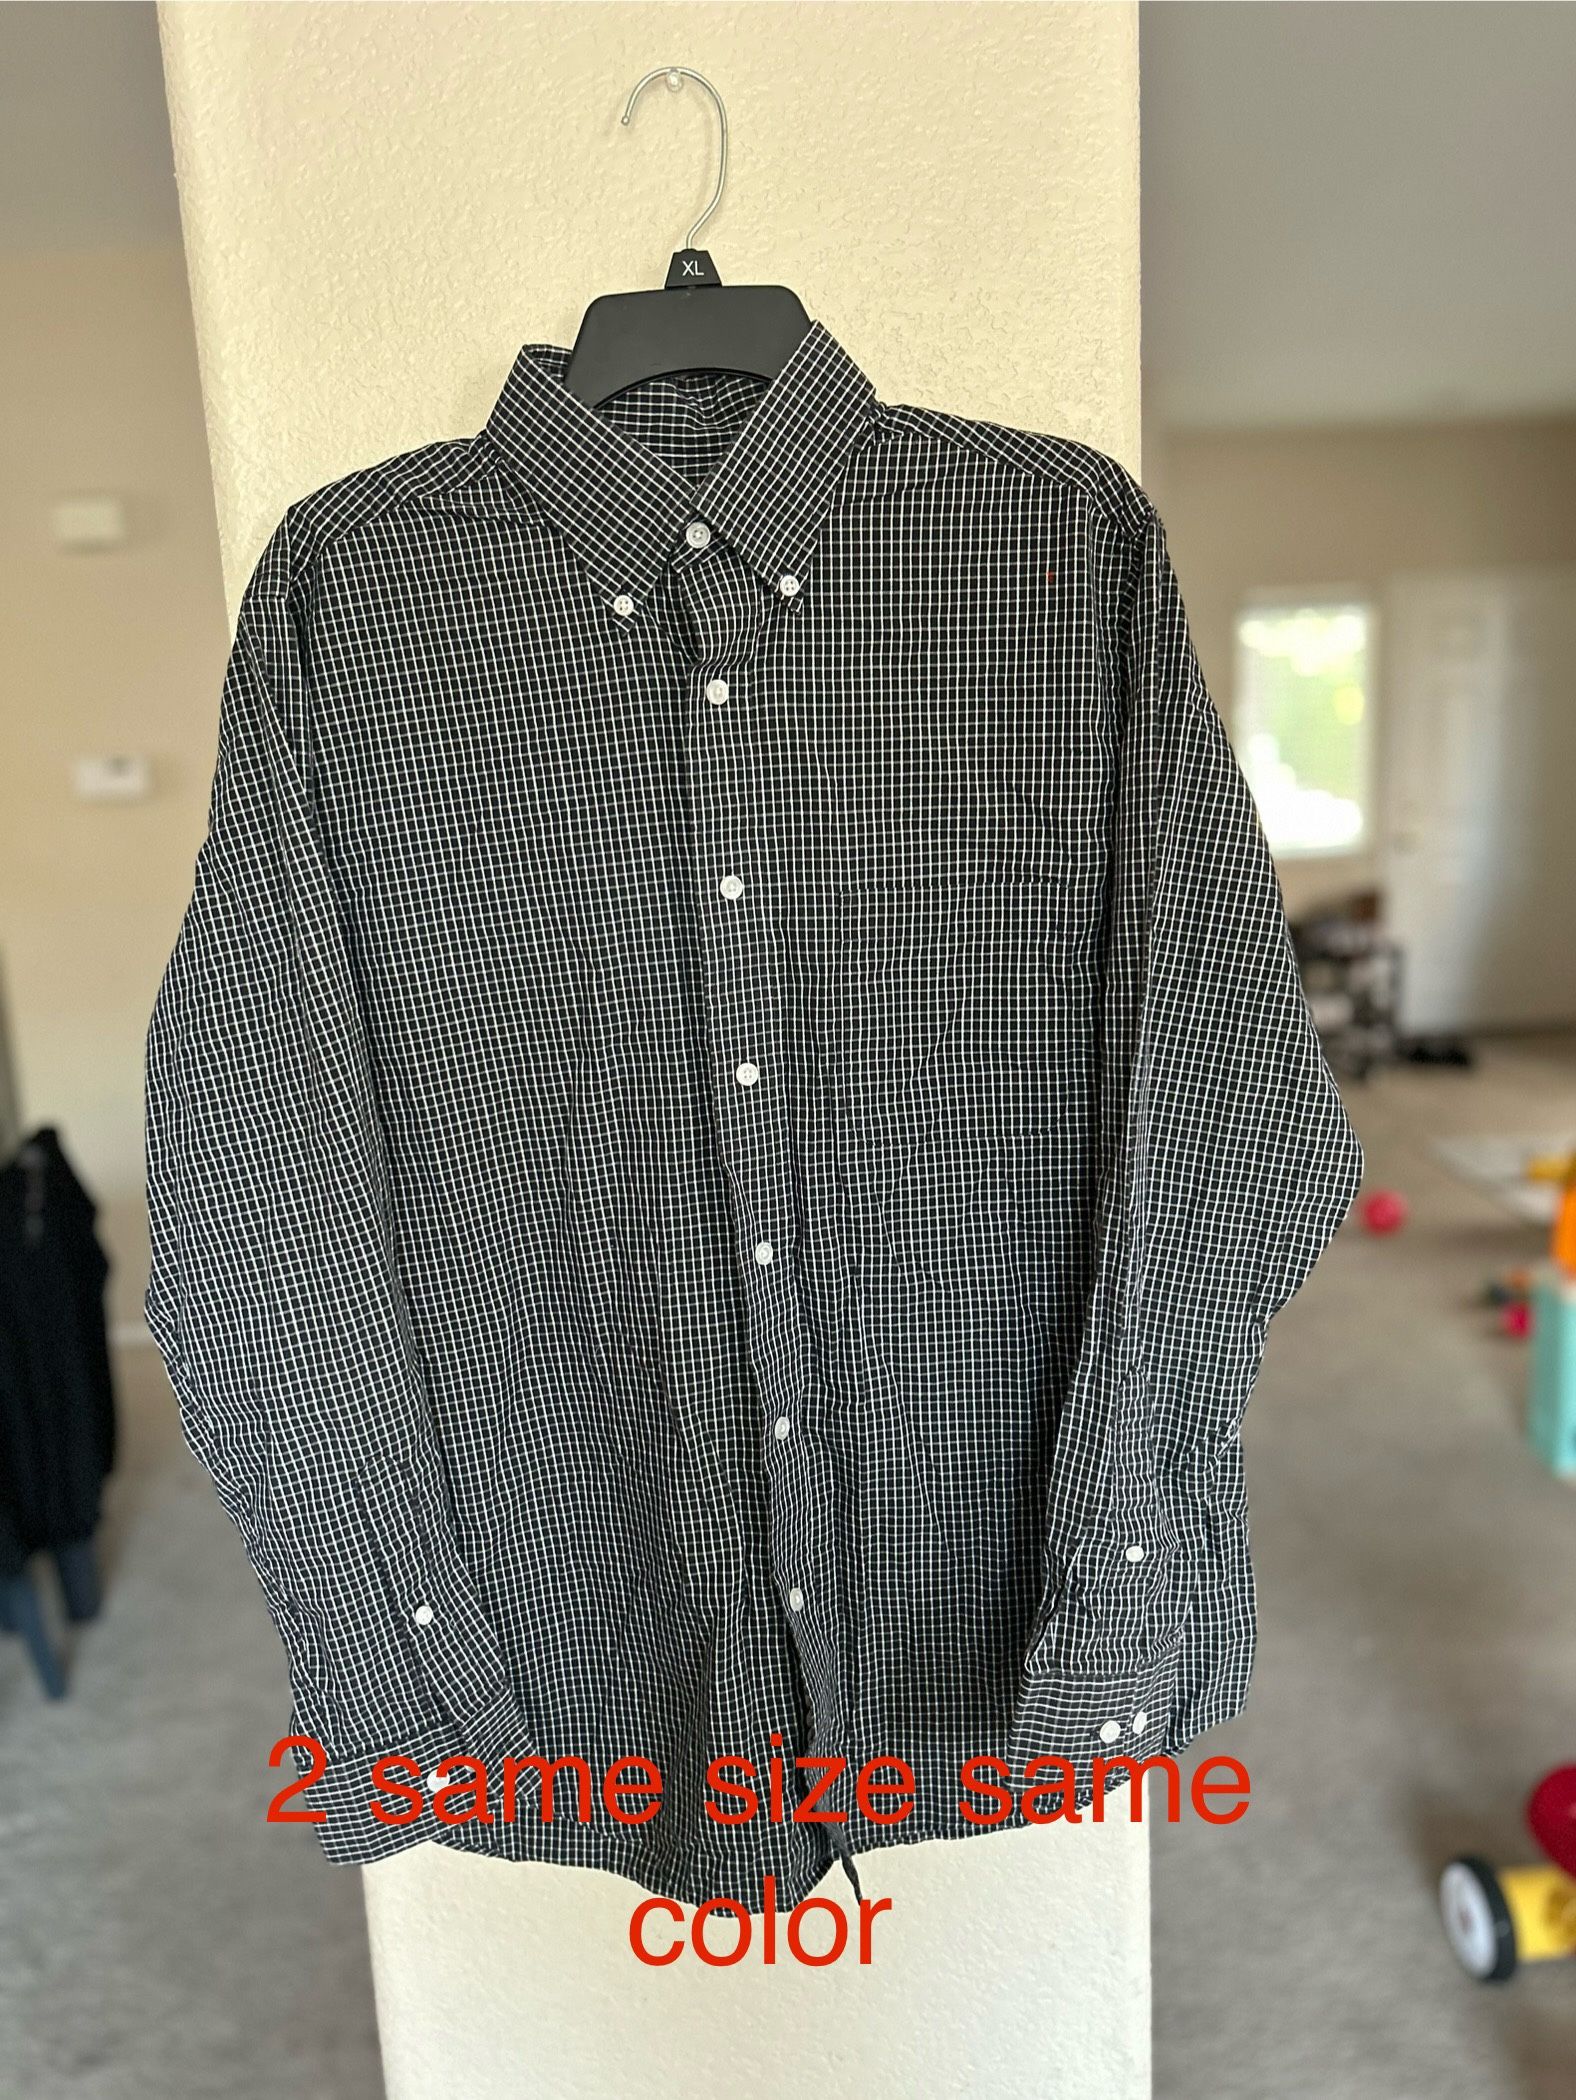 4 Dress Shirts Size 151/2 34/35